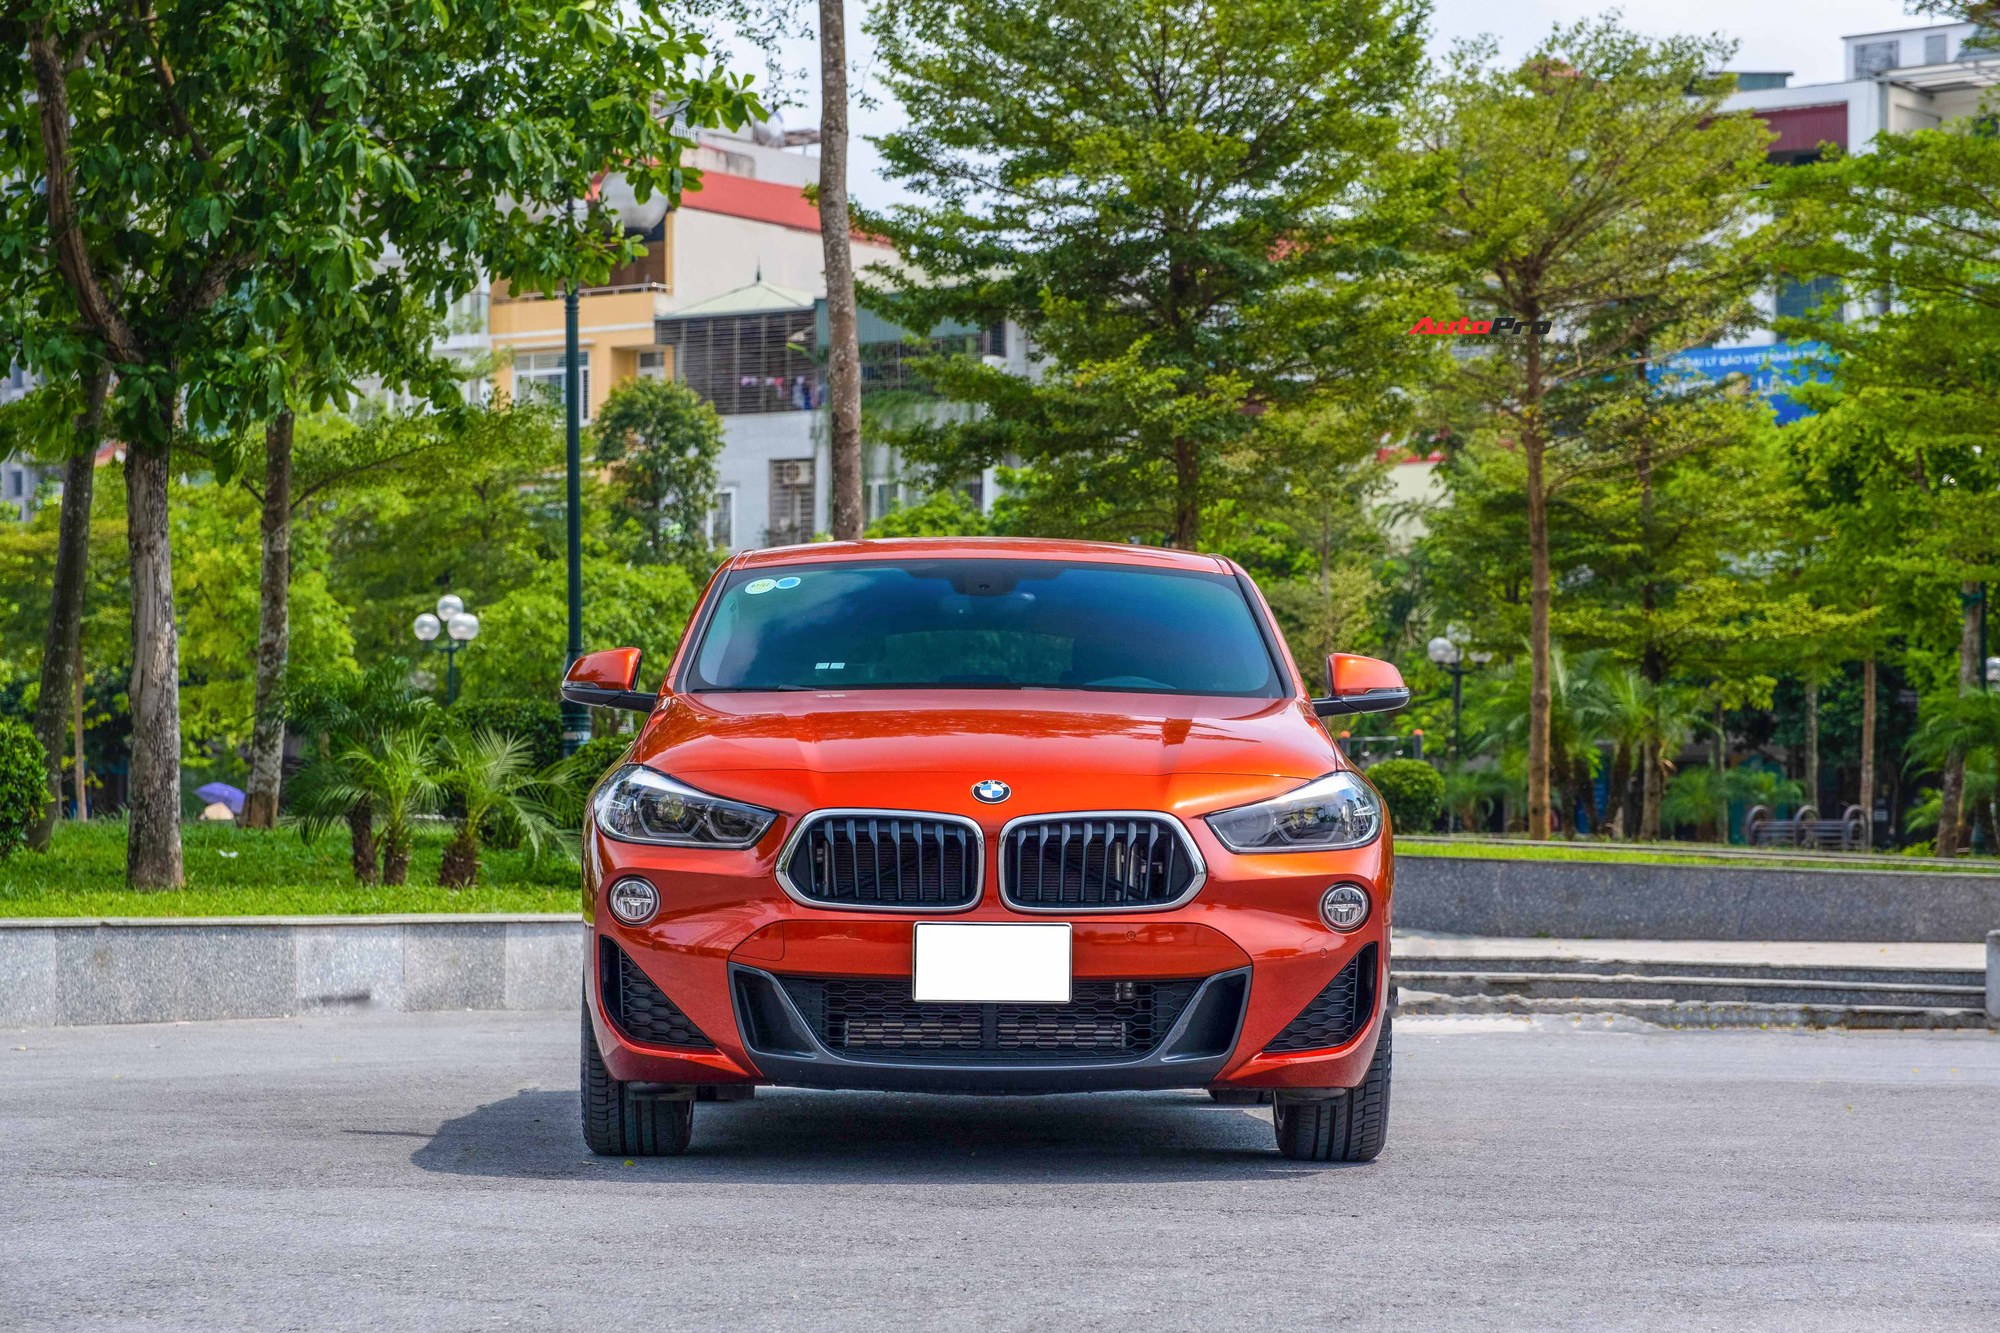 Đại gia bán BMW X2 giá 1,6 tỷ: 3 năm chạy 4.700km, xe chỉ cất trong nhà và mang đi bảo dưỡng - Ảnh 7.